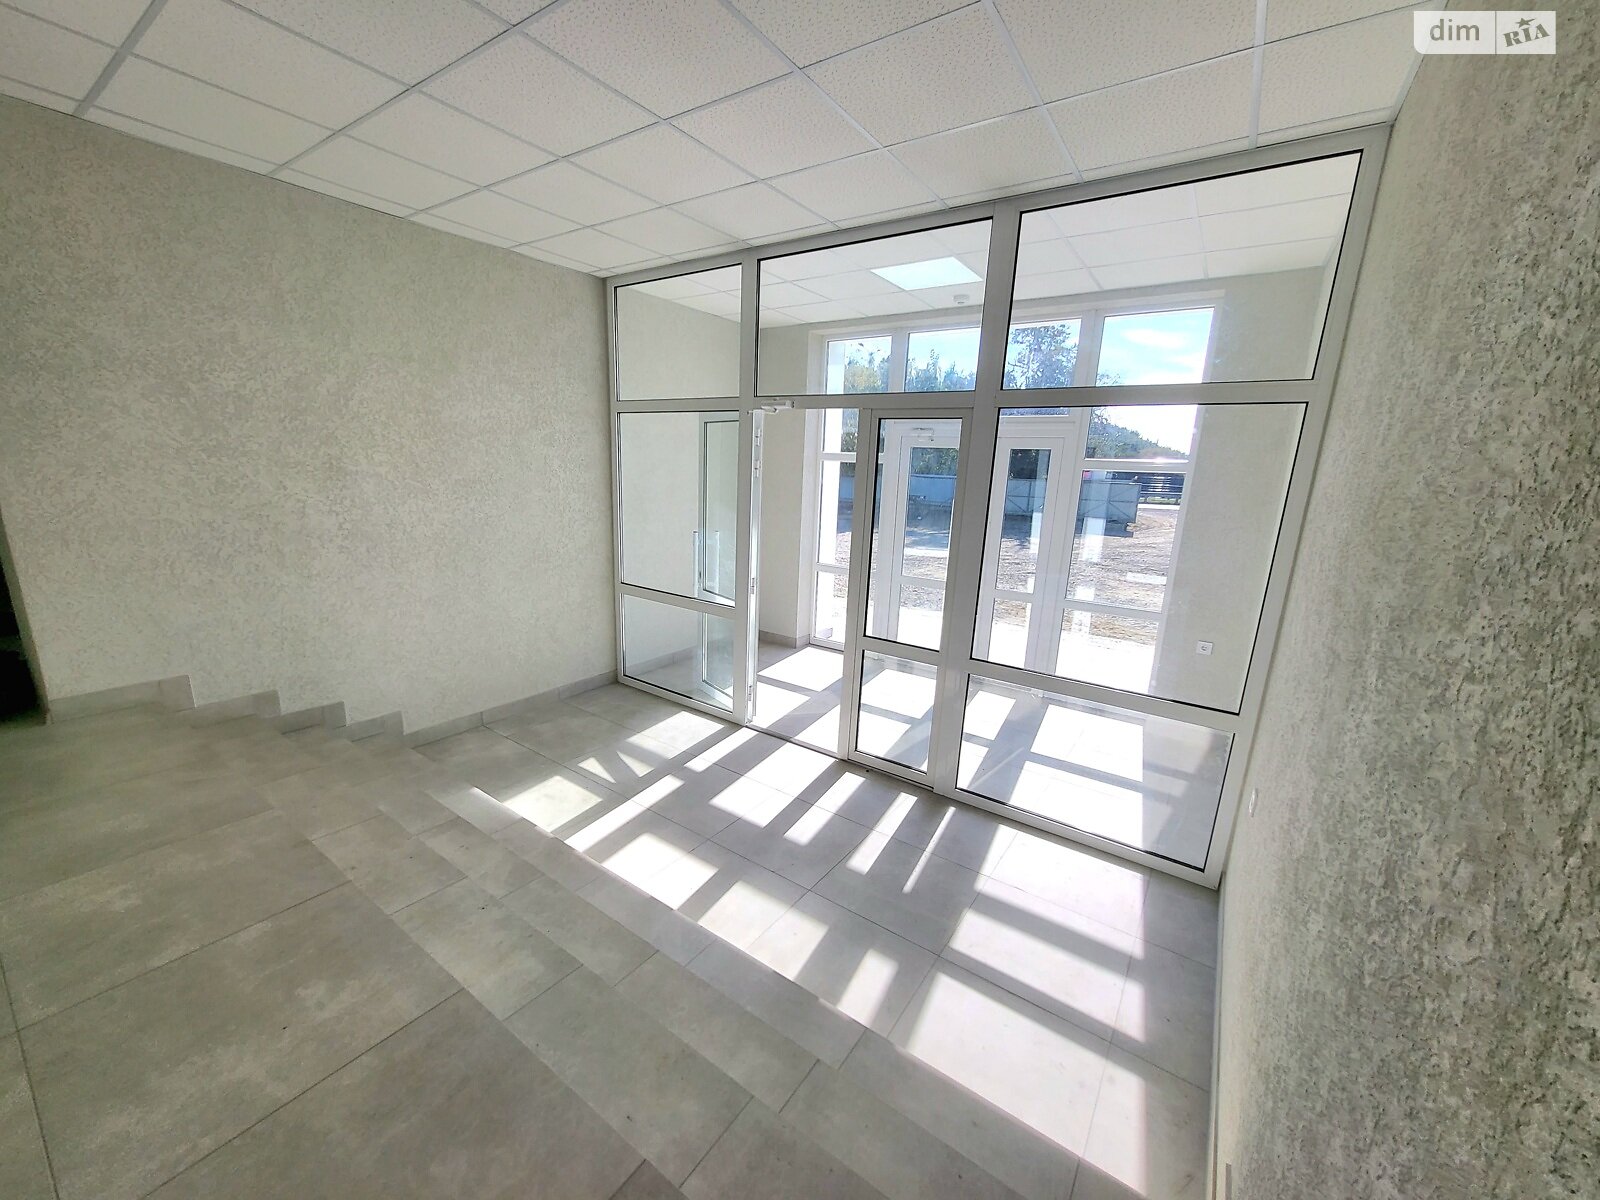 Аренда офисного помещения в Якушинцах, Хмельницьке шосе, помещений - 4, этаж - 1 фото 1